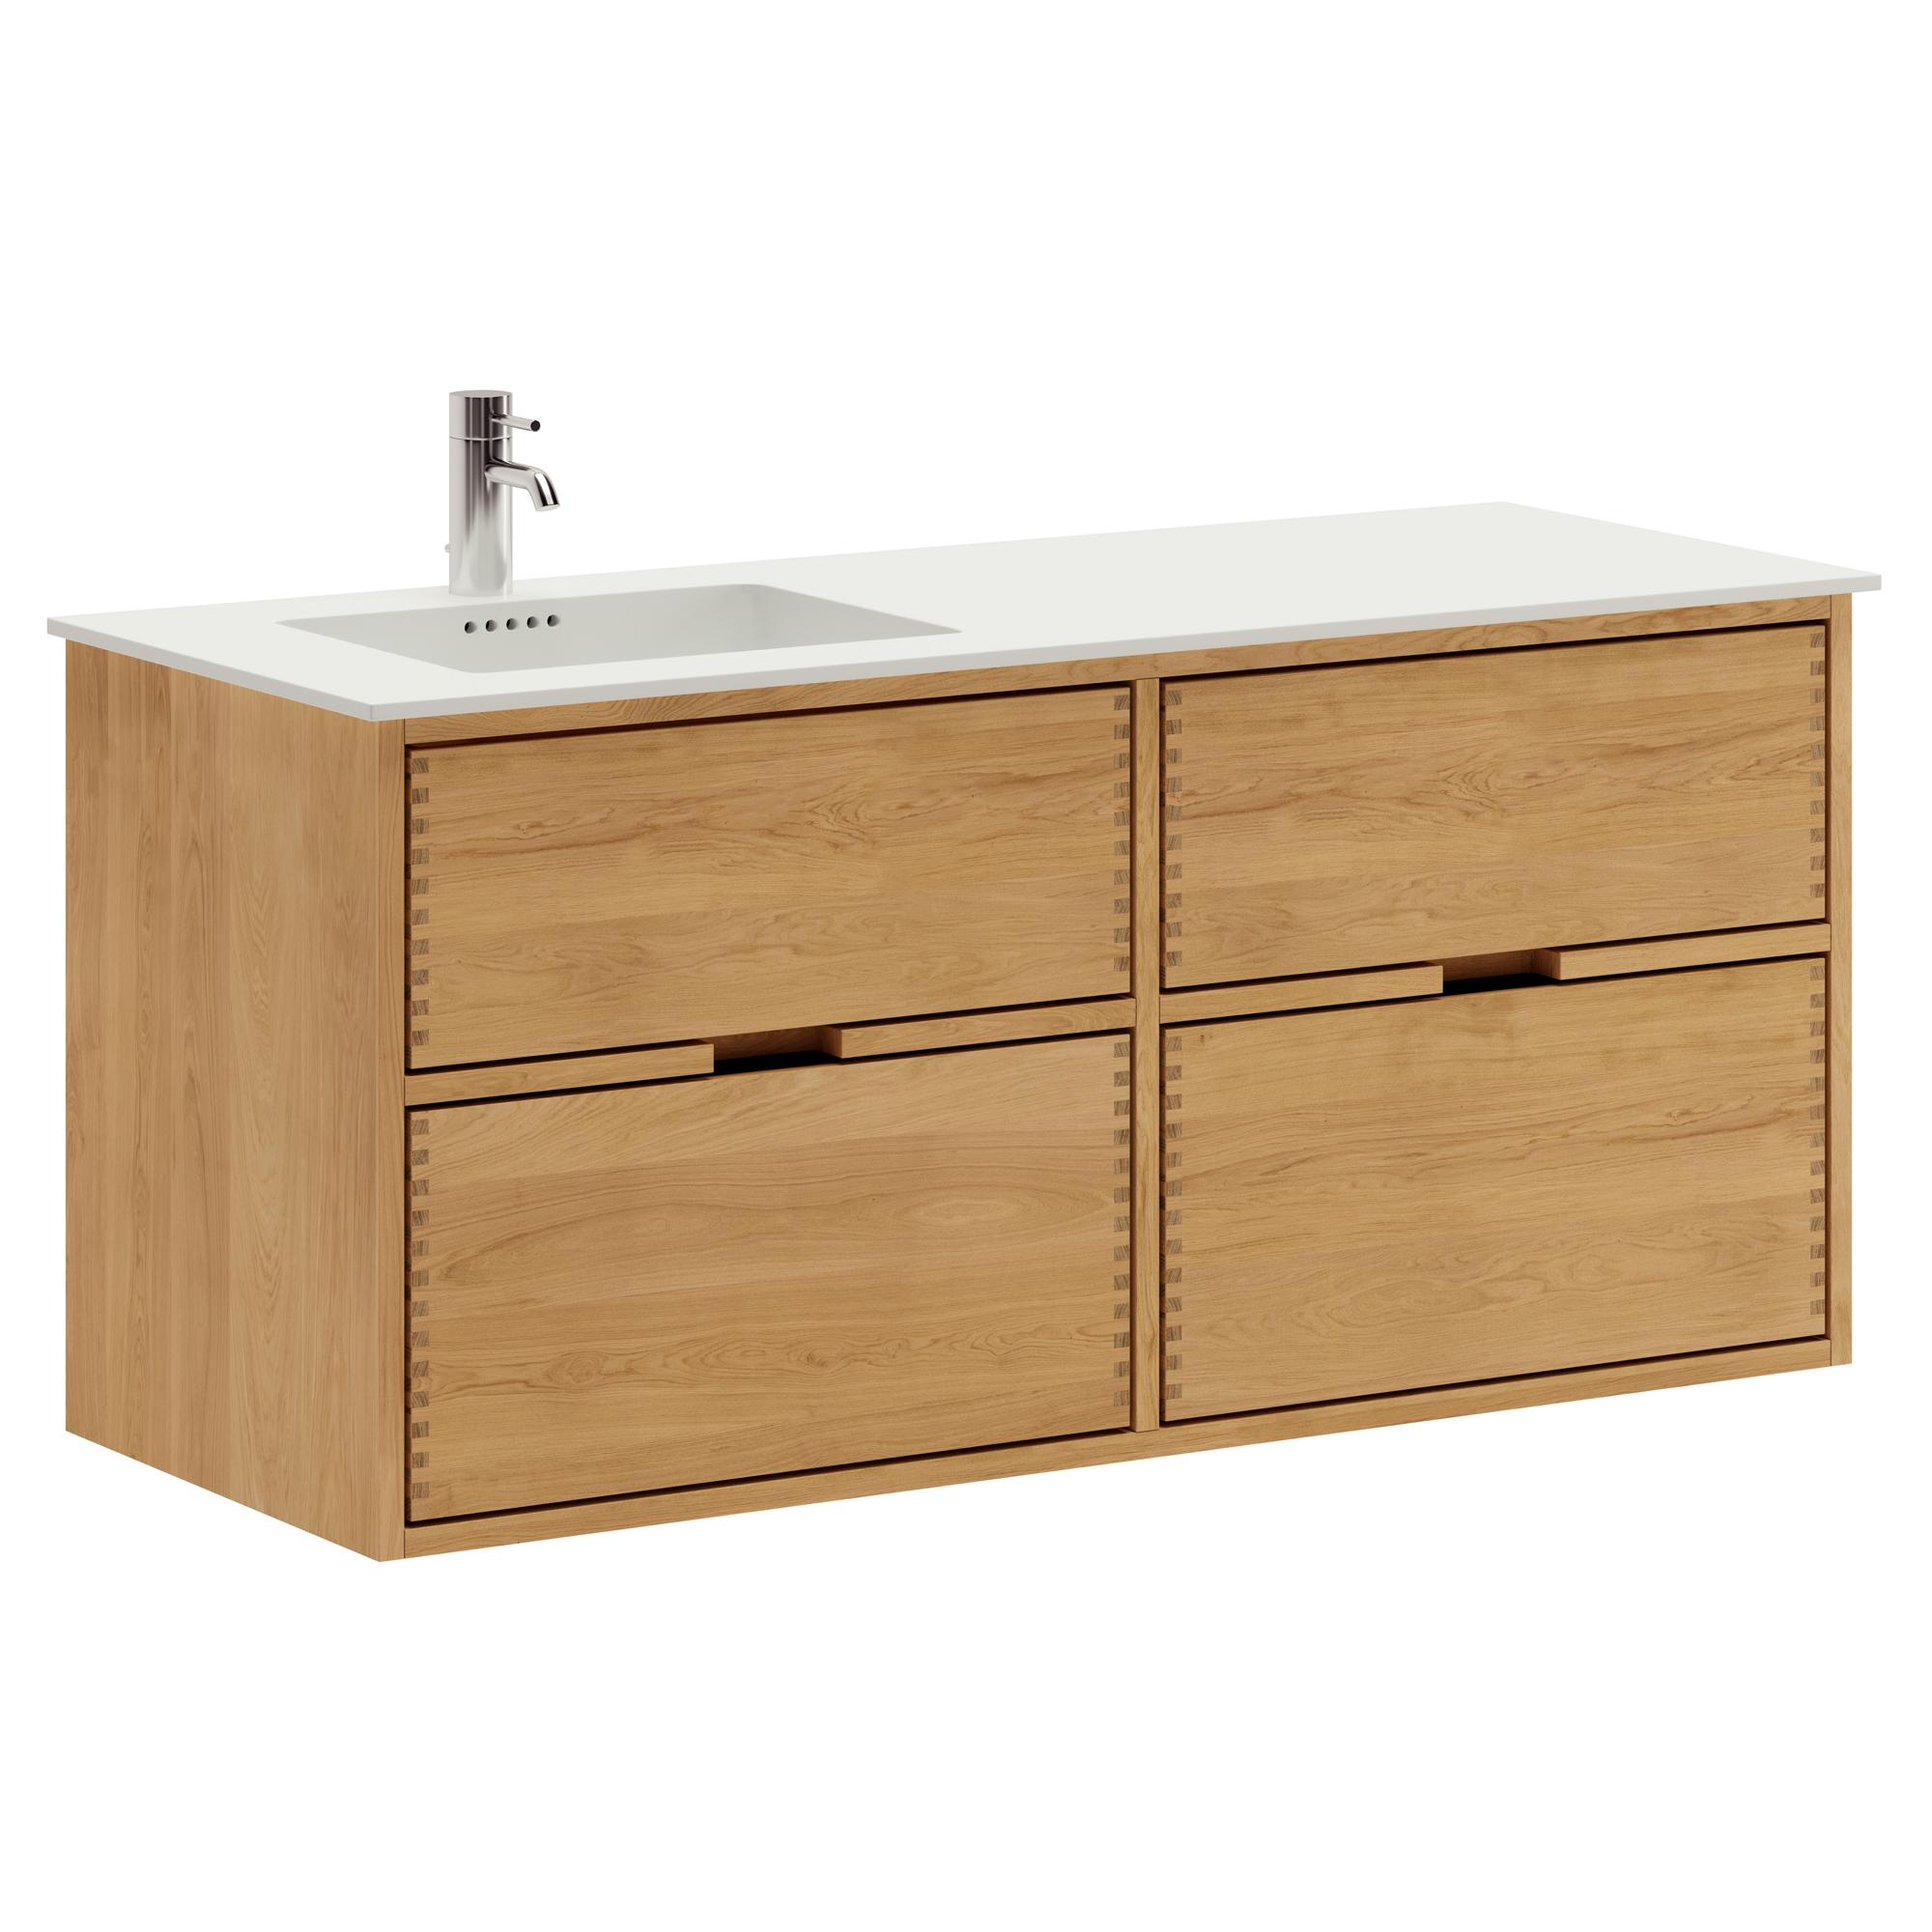 120 cm Just Wood Badezimmermöbel mit 4 Schubladen und Solid Surface-Waschbecken - Links